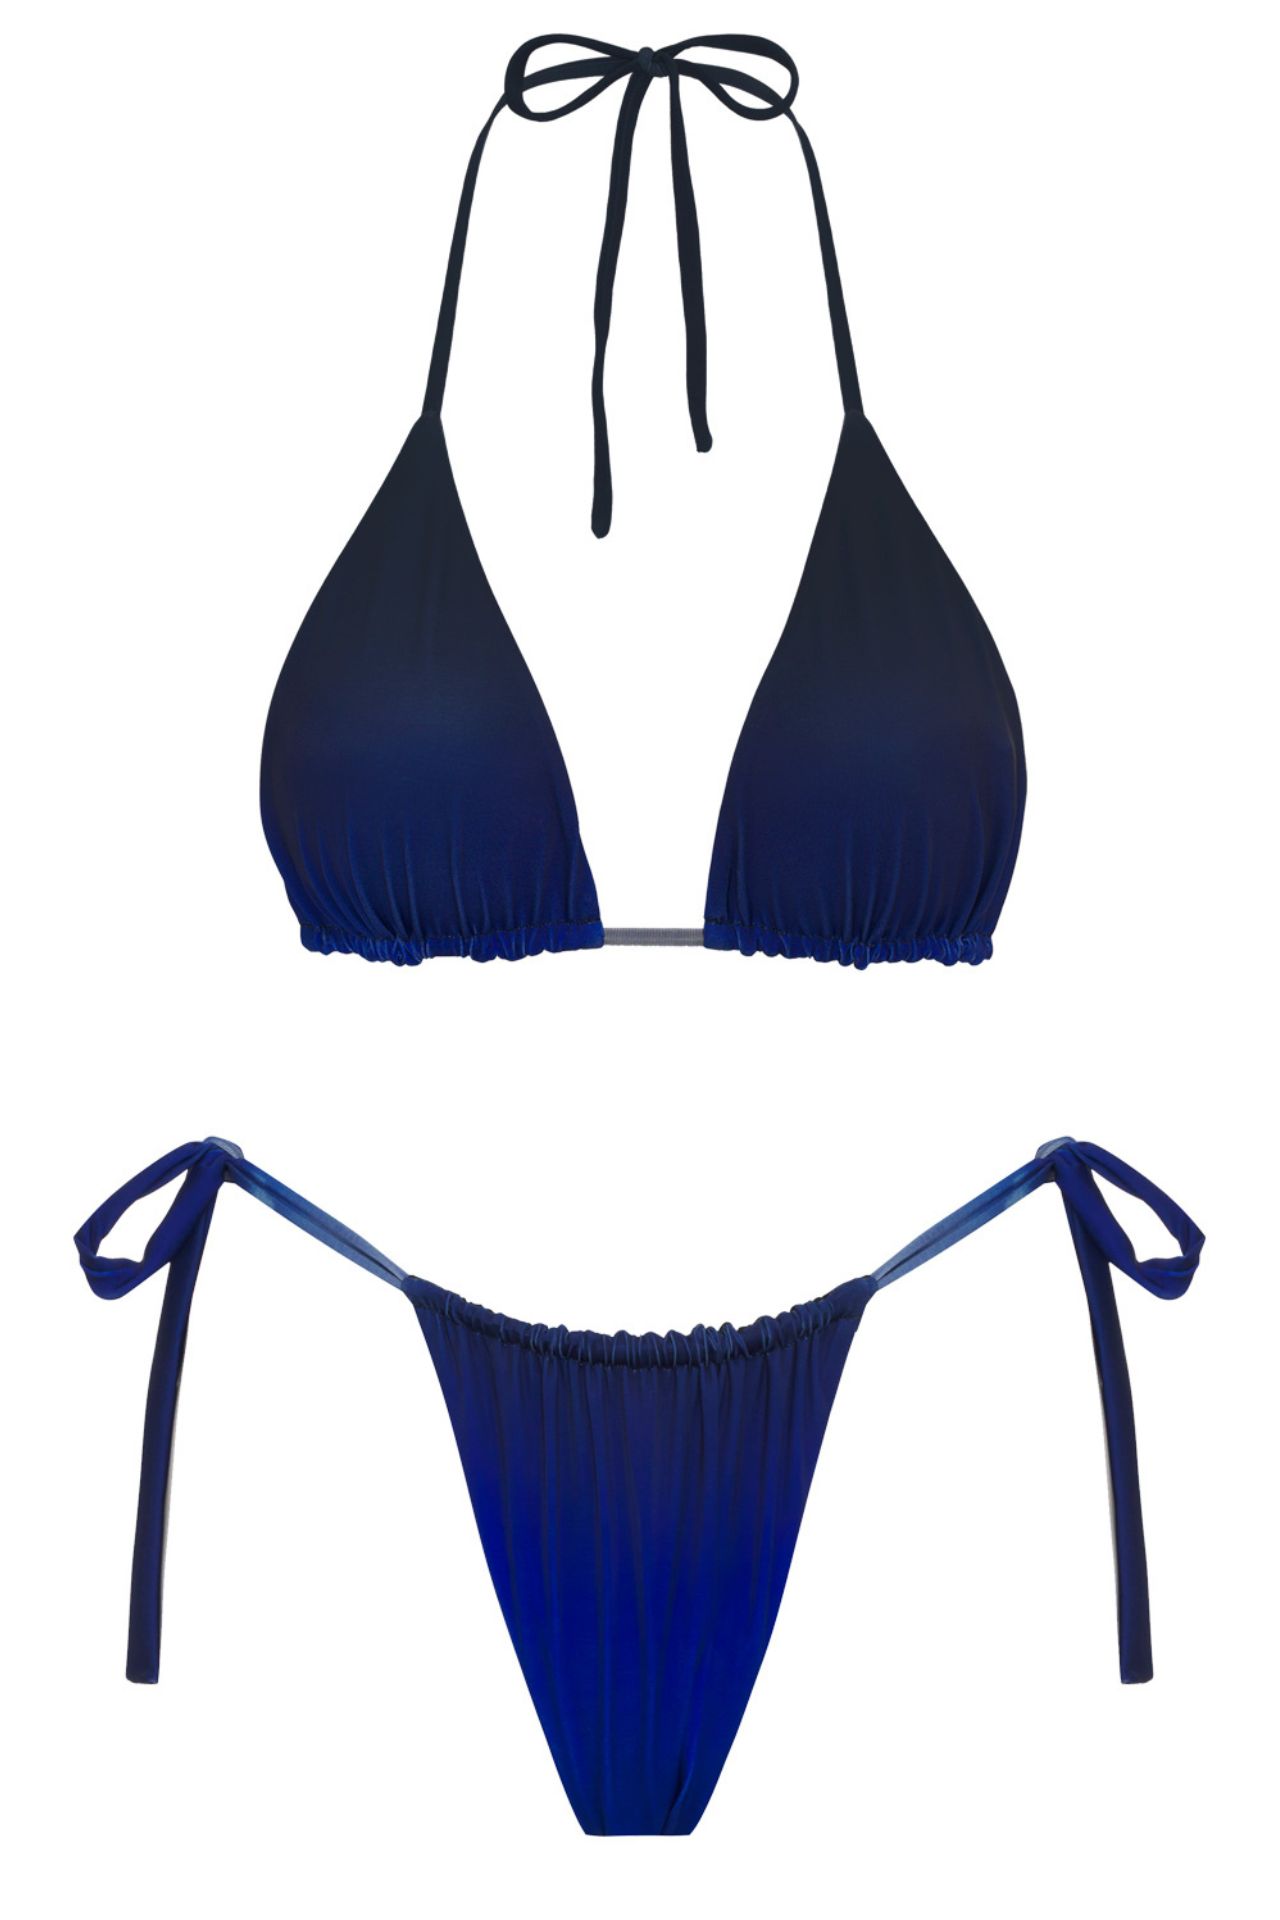 Nuestro Bikini Alexis Maverick cuenta con un top triangulo que es comodo y regulable. El bottoom regulable en la parte de adelante y atrás con pitas para amarrar a los costados.

- Material -

78% Nylon

22% Elastane




